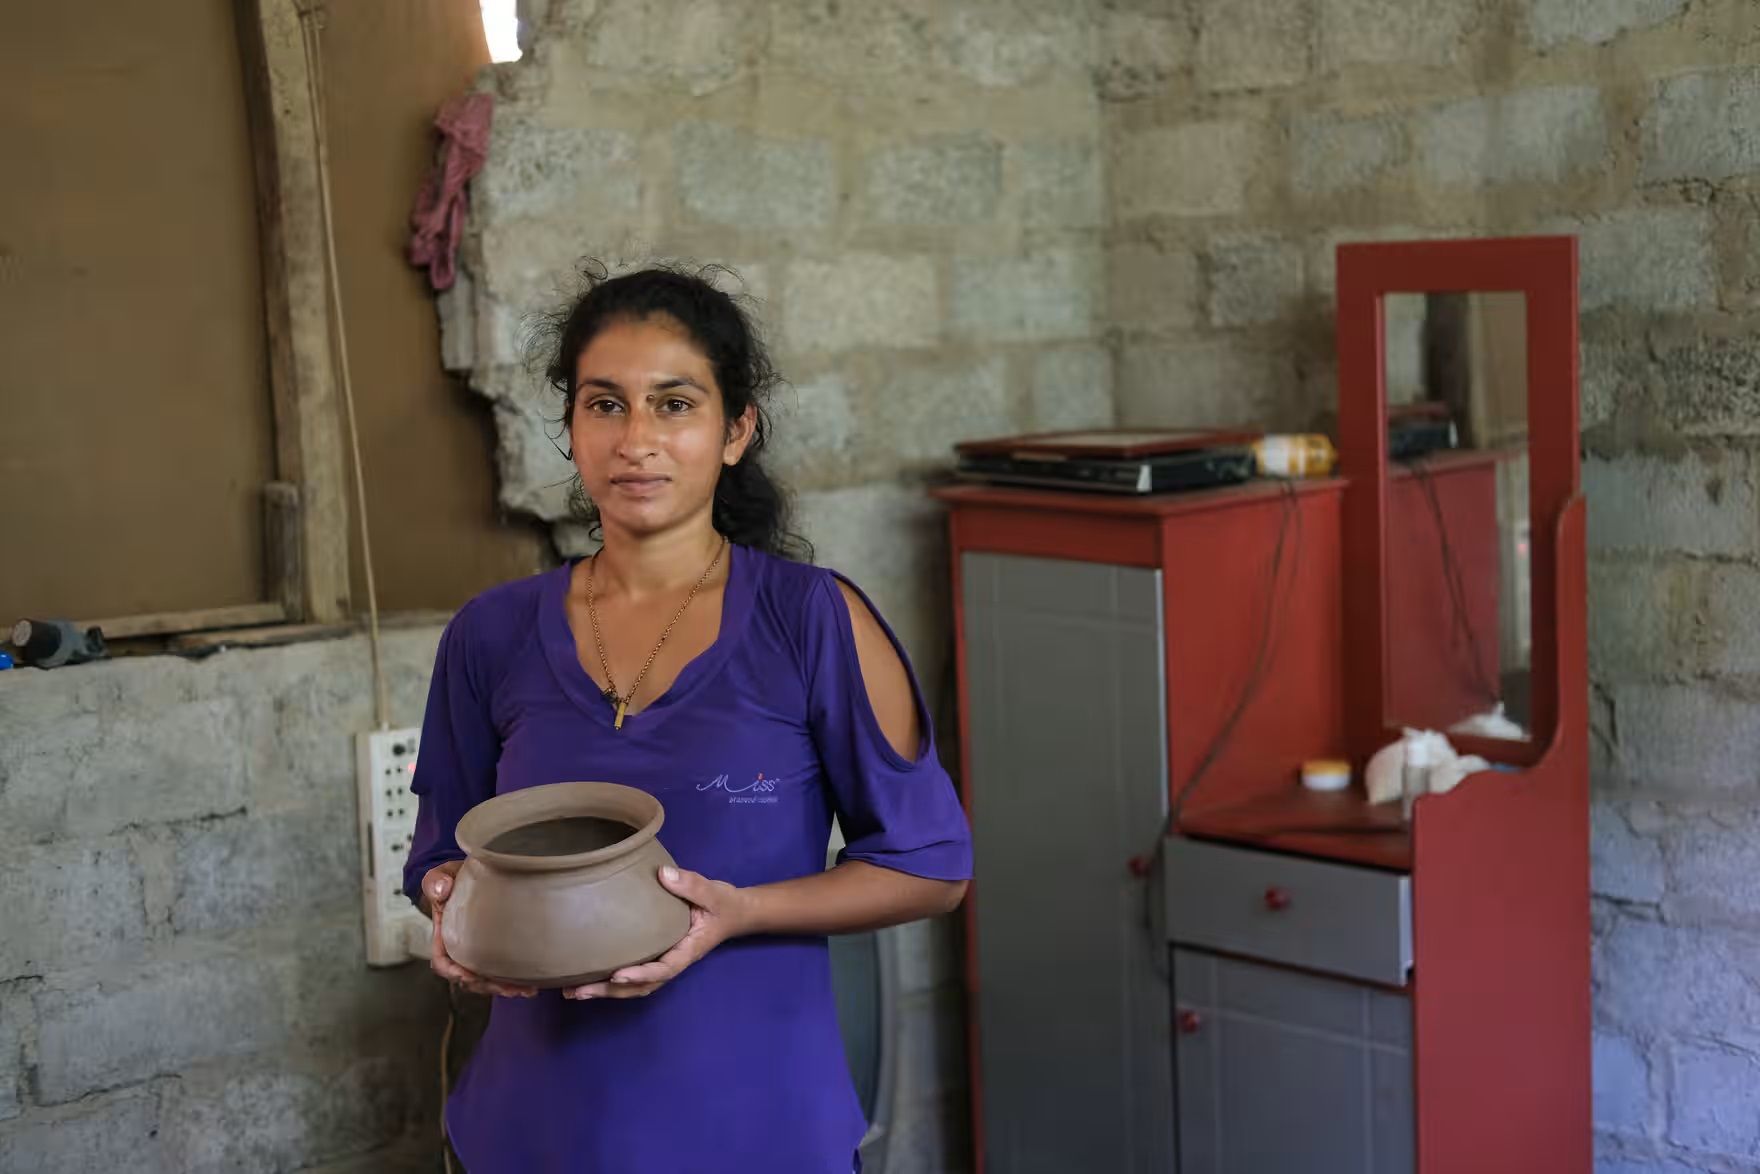 Duleeka Madhunamali sửa chữa những chiếc bình đất sét mà cô ấy bán để nuôi 3 đứa con của mình. Một chiếc bình đem về cho cô ấy 18 rupee (khoảng 300 đồng)